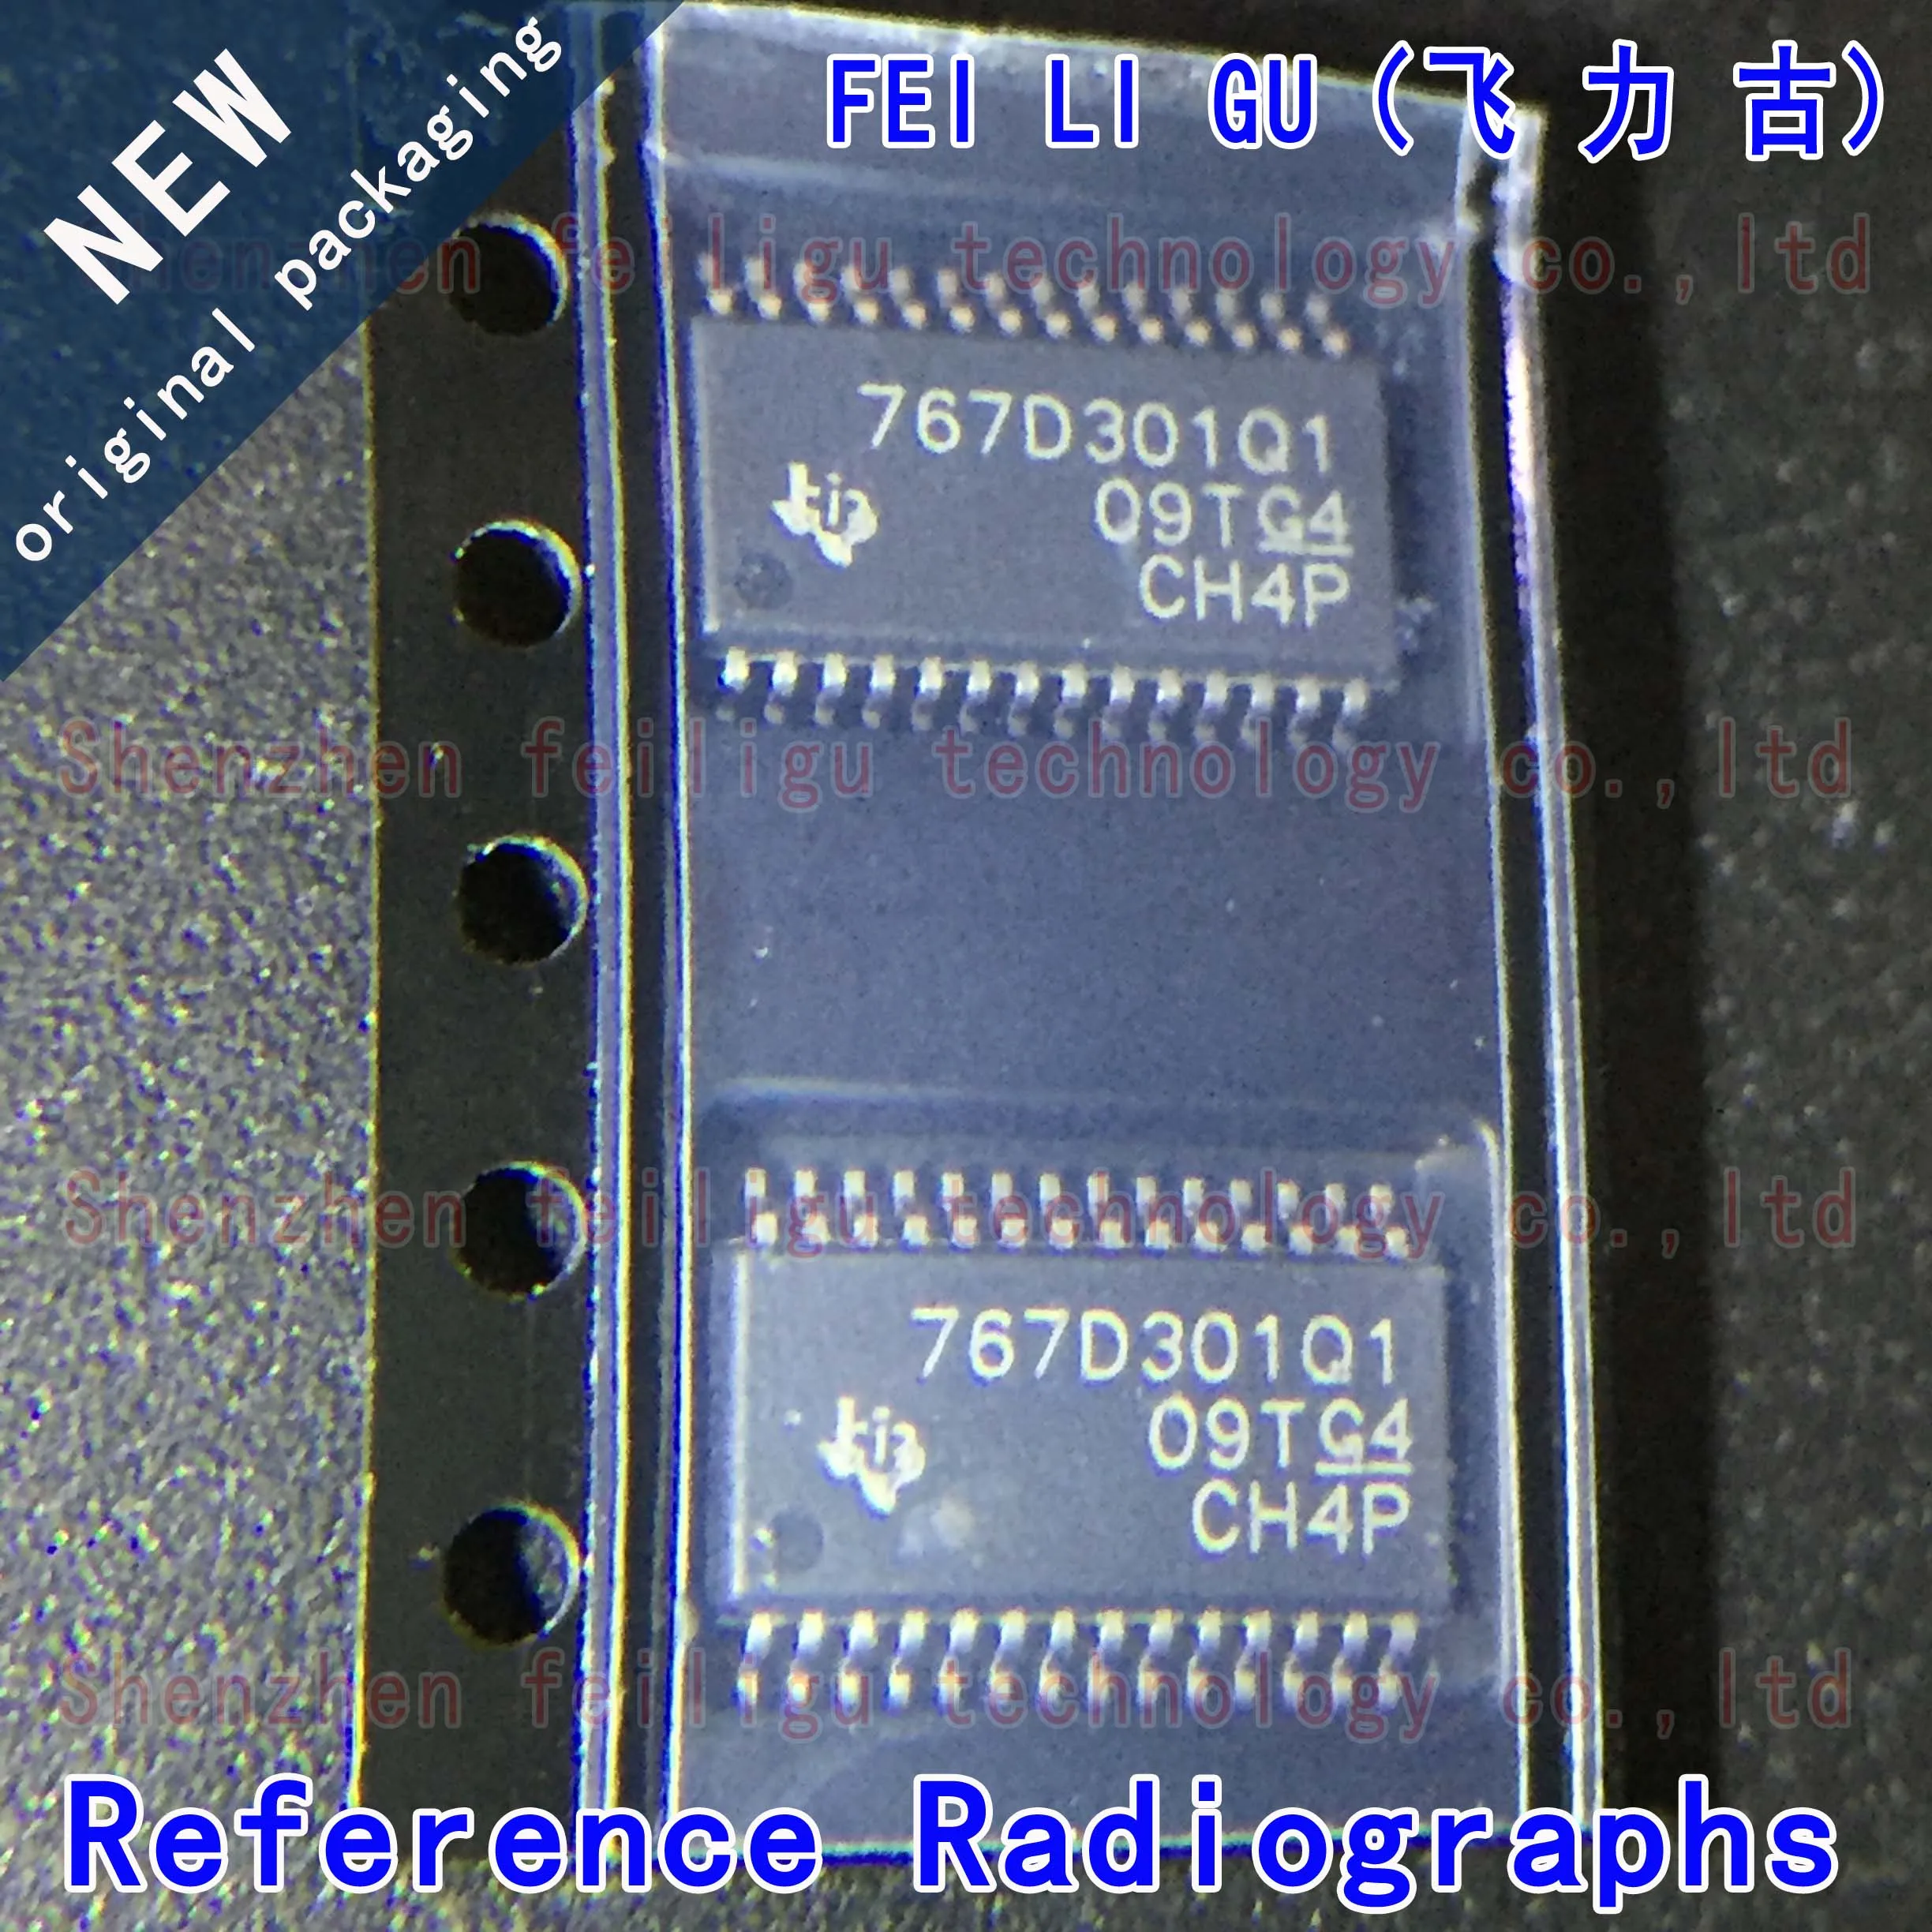 100% New original TPS767D301QPWPRQ1 767D301Q1 package: HTSSOP28 automotive dual output low dropout regulator chip new original tps92692qpwprq1 92692q htssop 20 automotive grade led driver chip